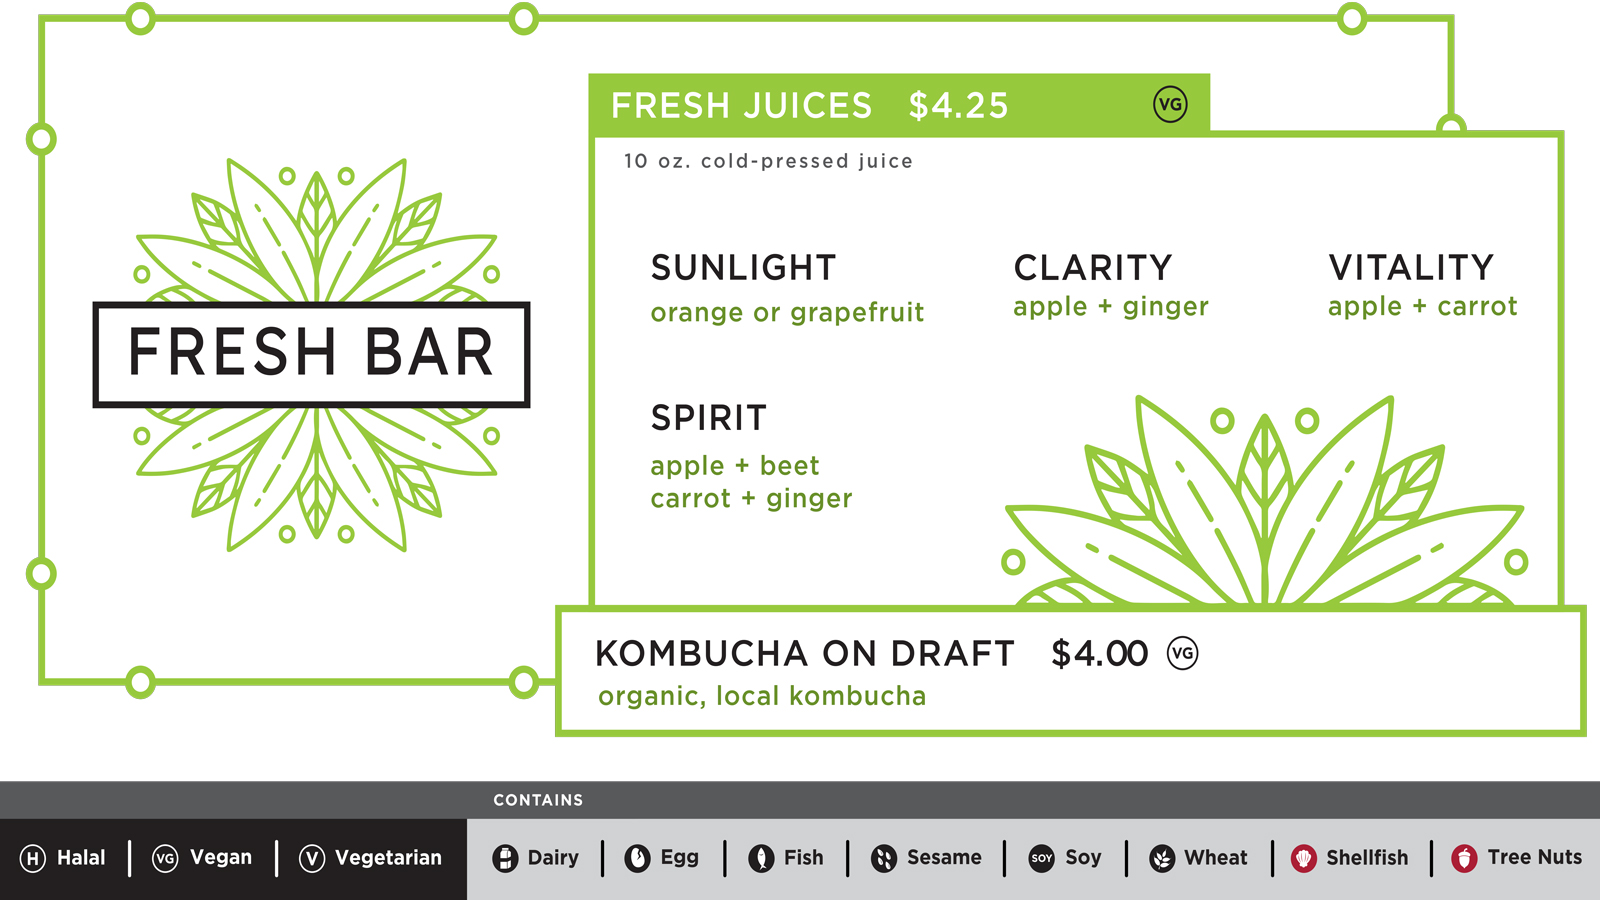 The fresh juice menu for Fresh Bar